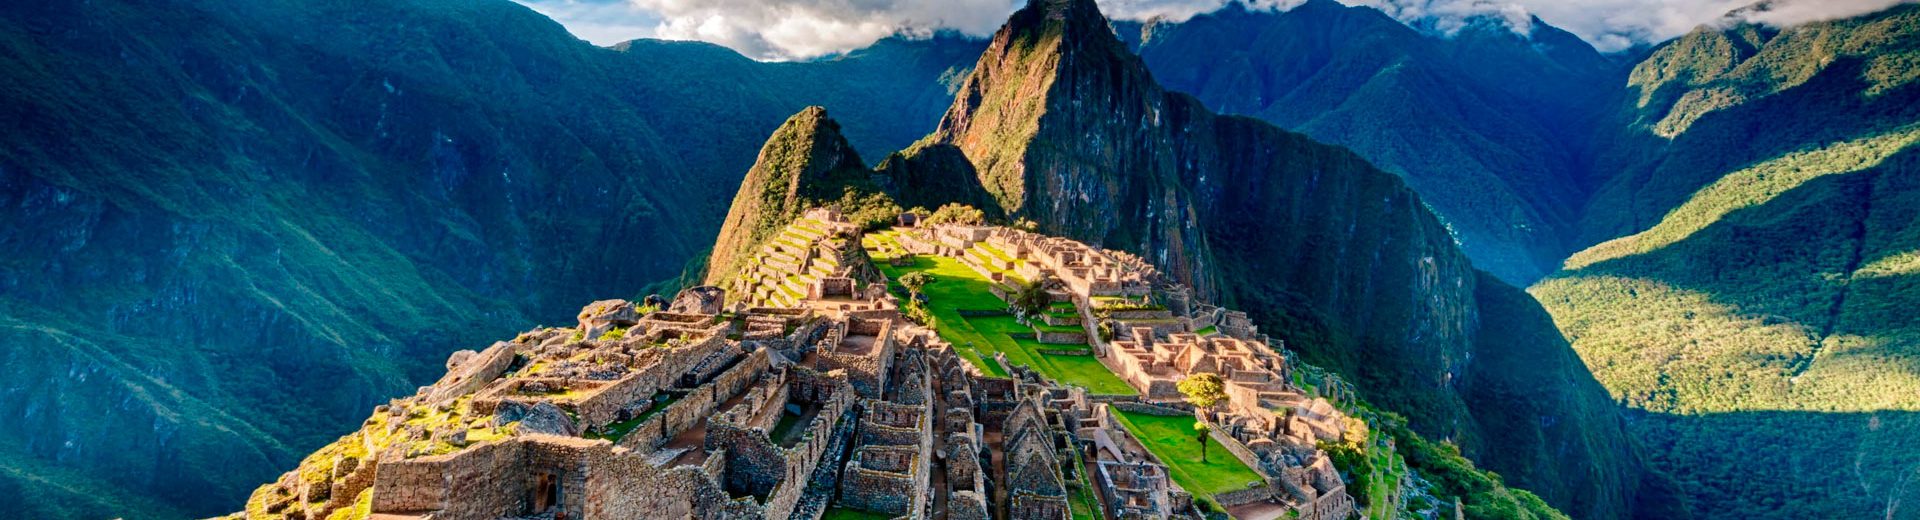 Roteiro para o Peru: 3 destinos fantásticos